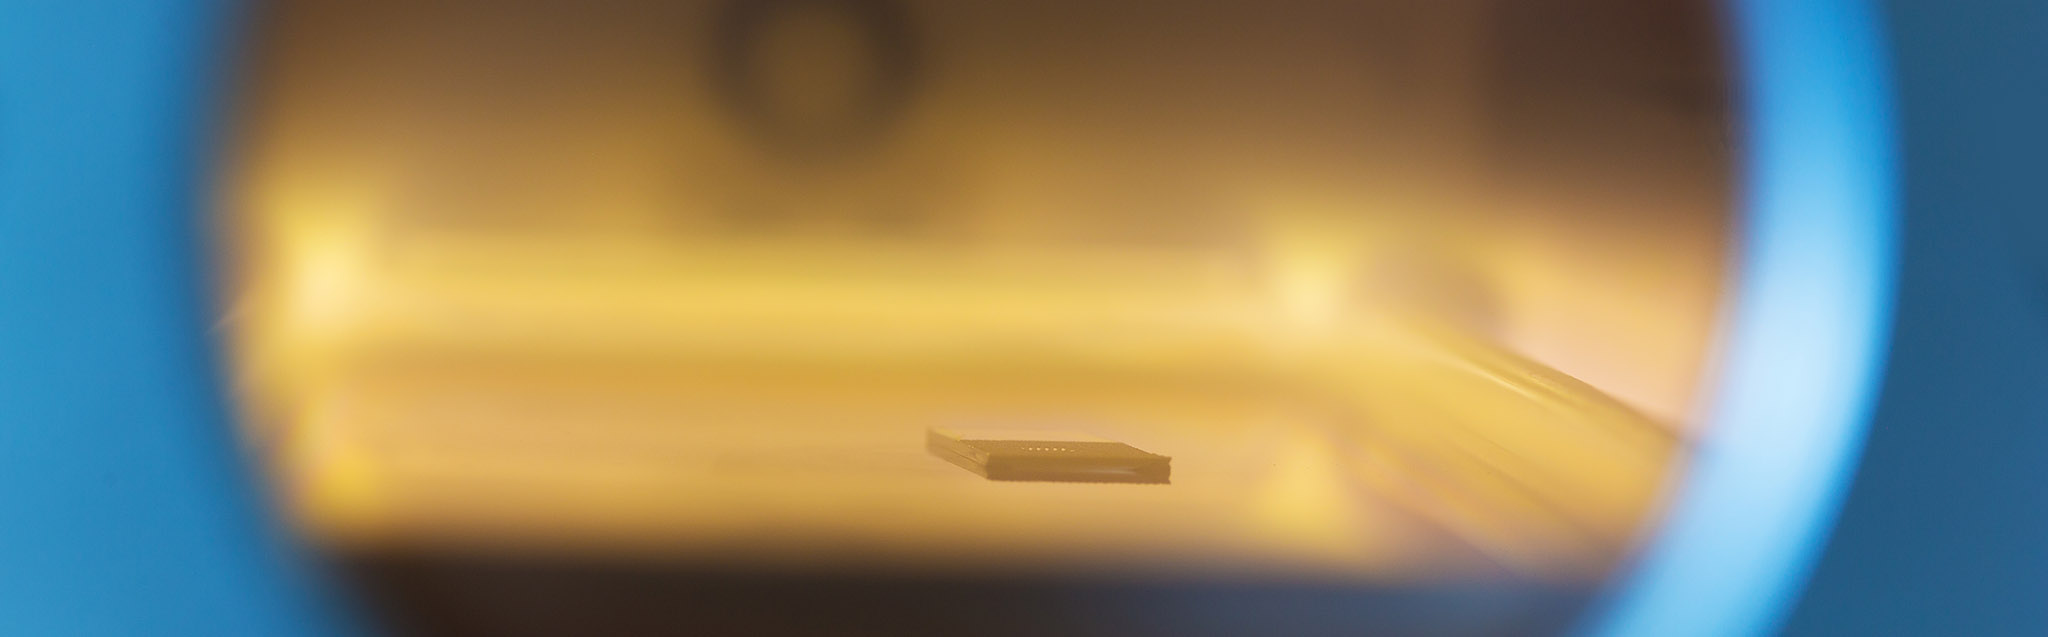 Ein Microchip wird für die Untersuchung im Rasterelektronenmikroskop in der Plasmaanlage präpariert.